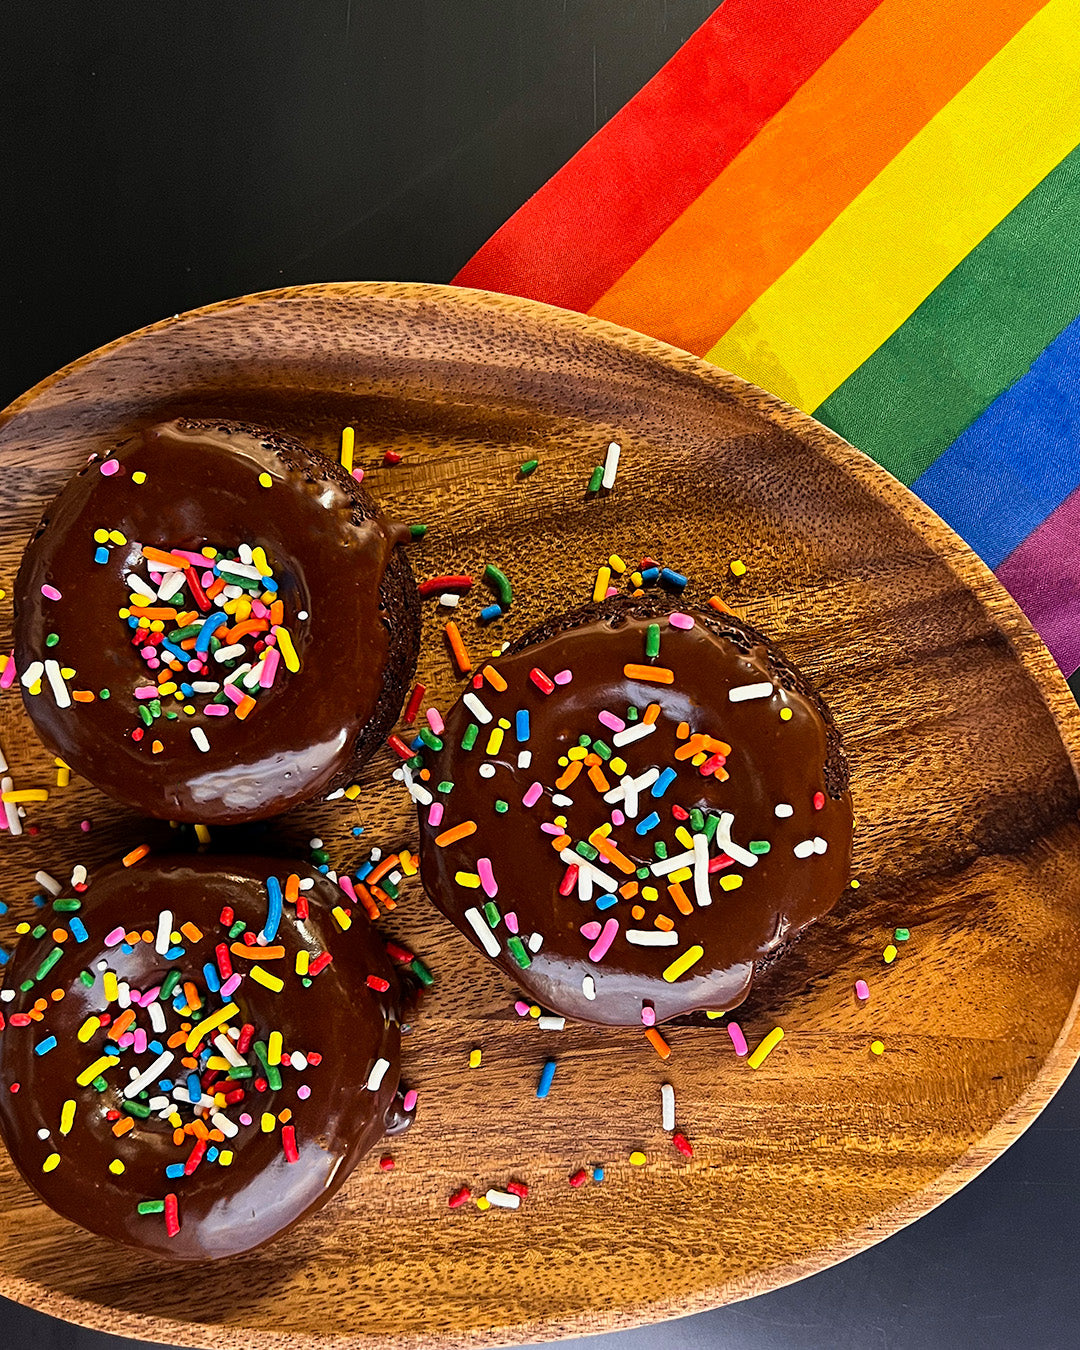 Pride donuts for pride weekend!